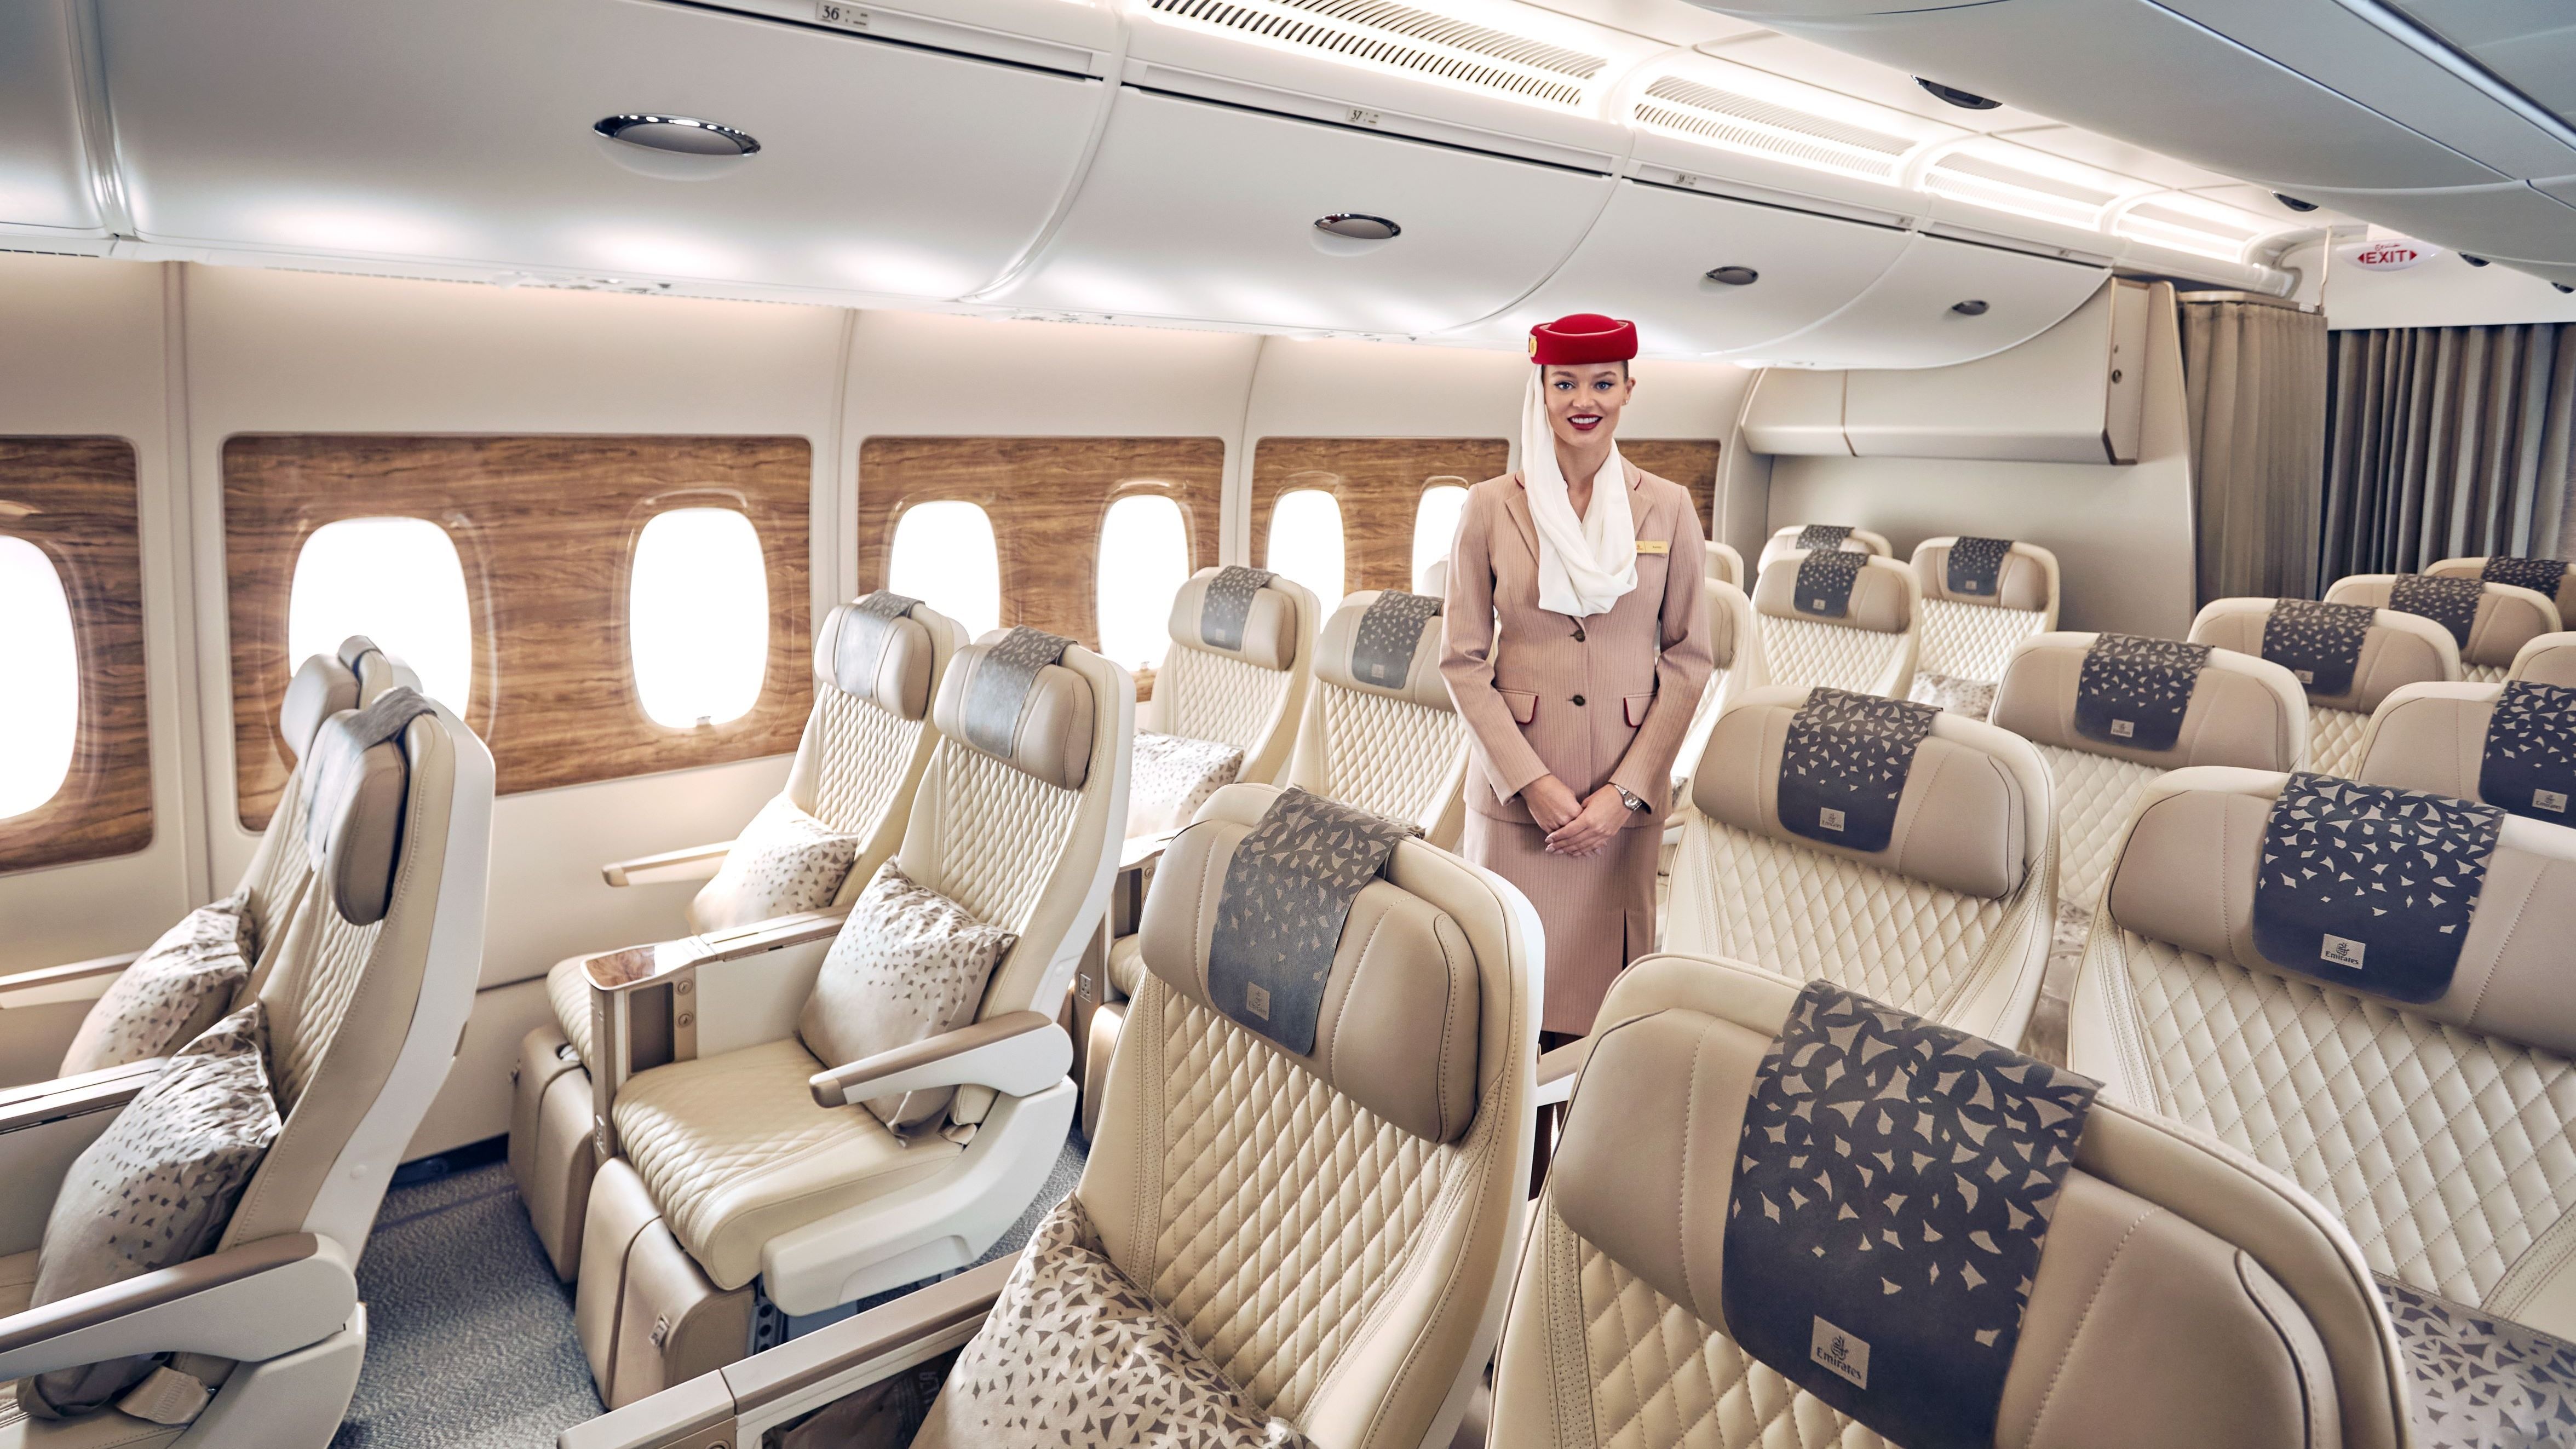 Emirates Airbus A380s